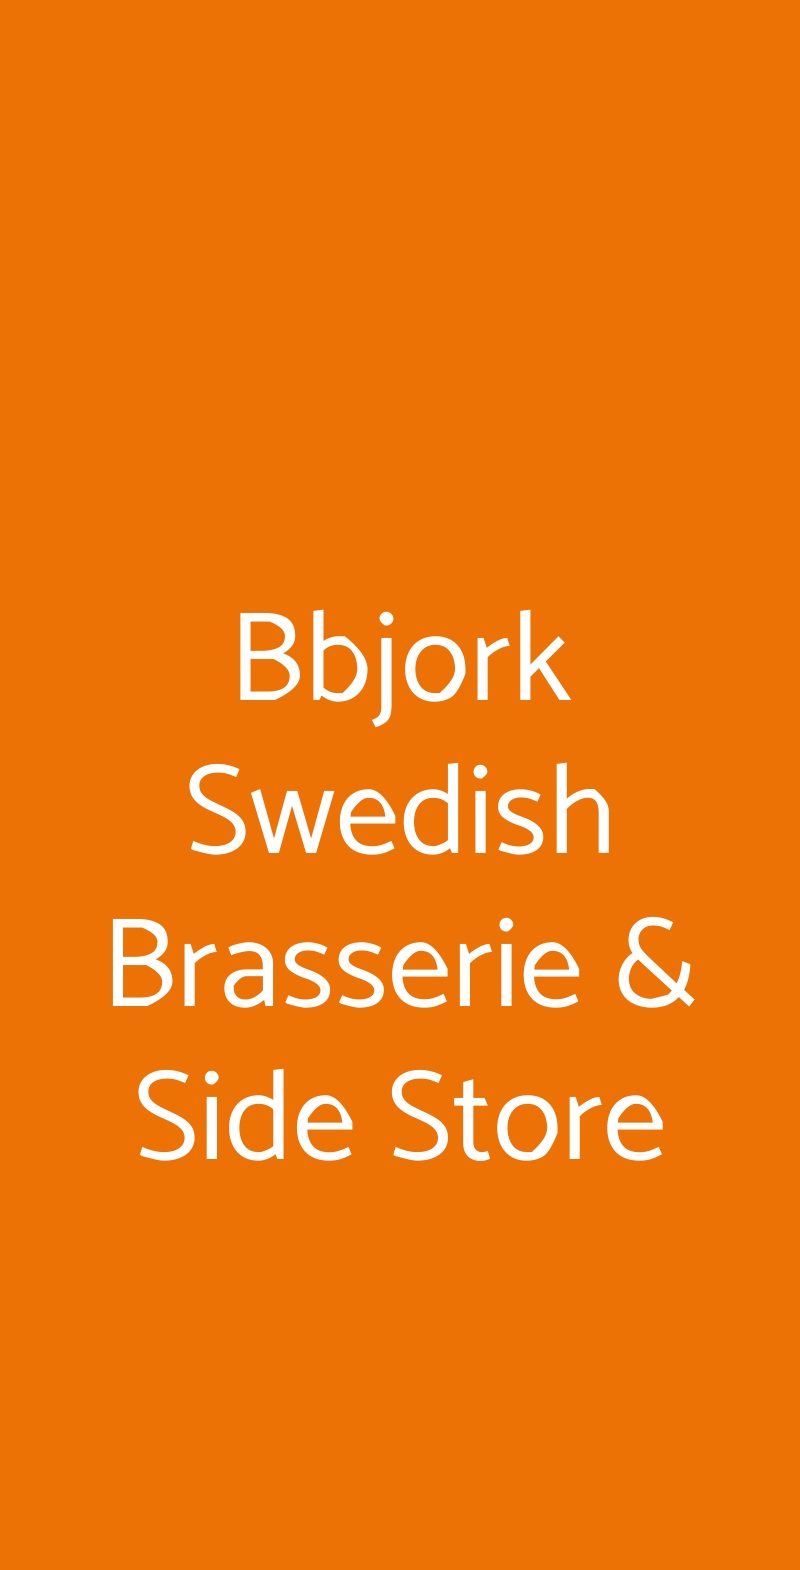 Bbjork Swedish Brasserie & Side Store Milano menù 1 pagina